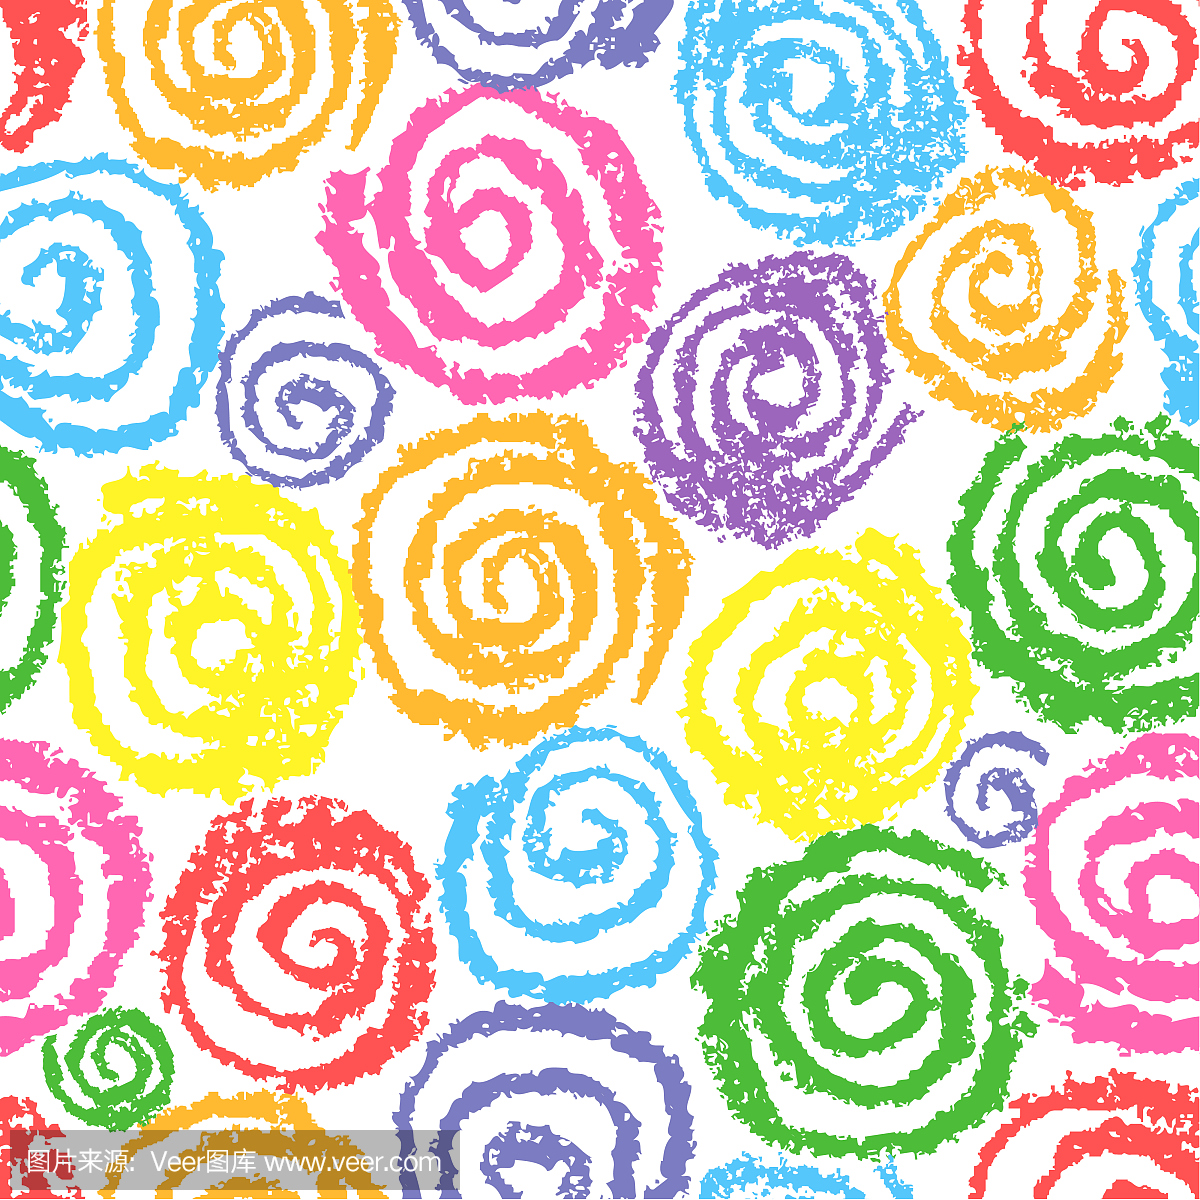 彩色蜡笔手绘螺旋螺旋圆形图案喜欢孩子画的多色有趣的圆形元素